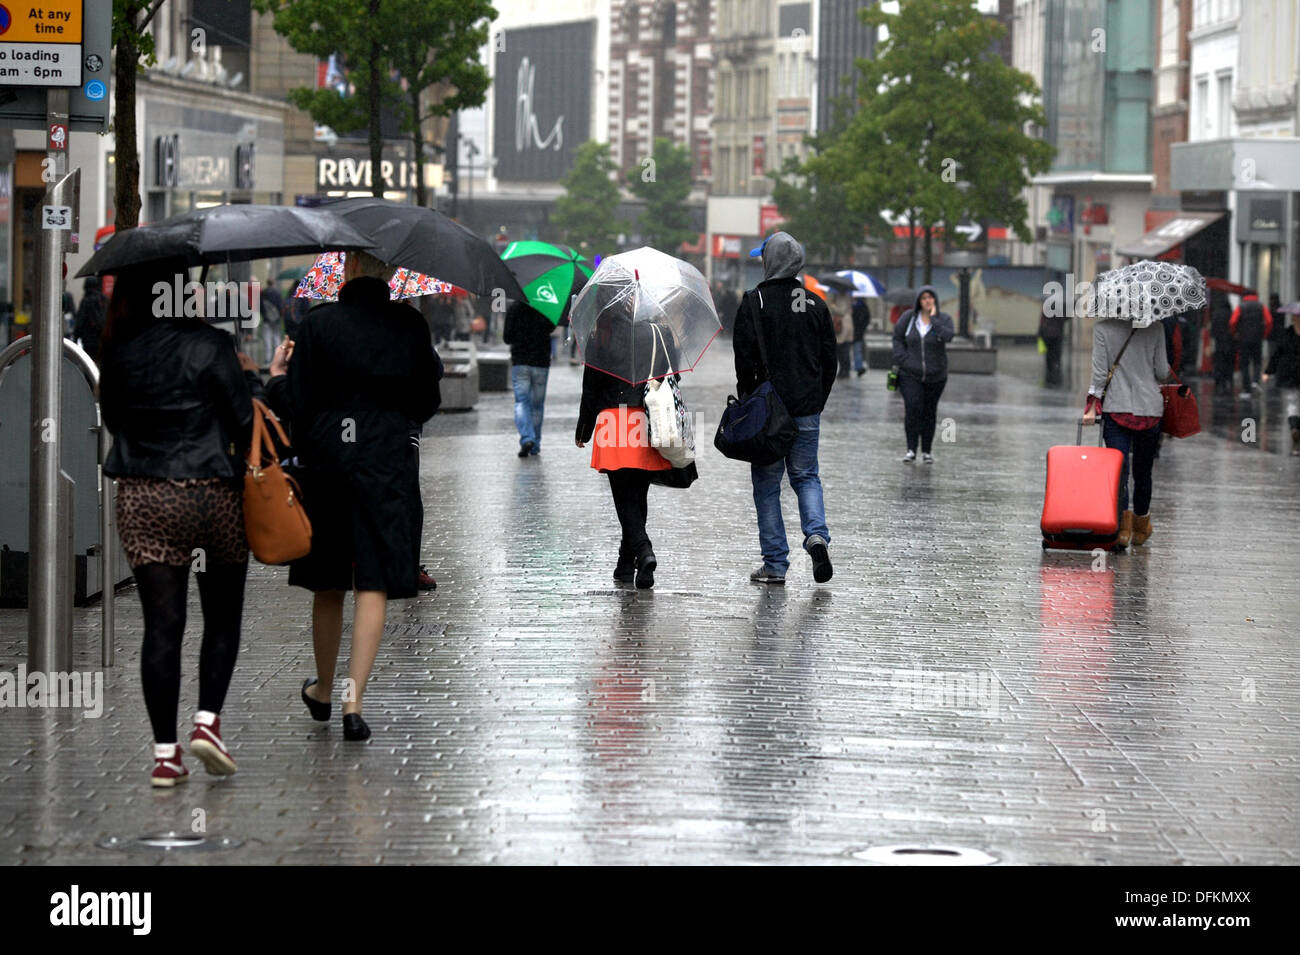 19/9/13 Rain in Liverpool City Centre Stock Photo